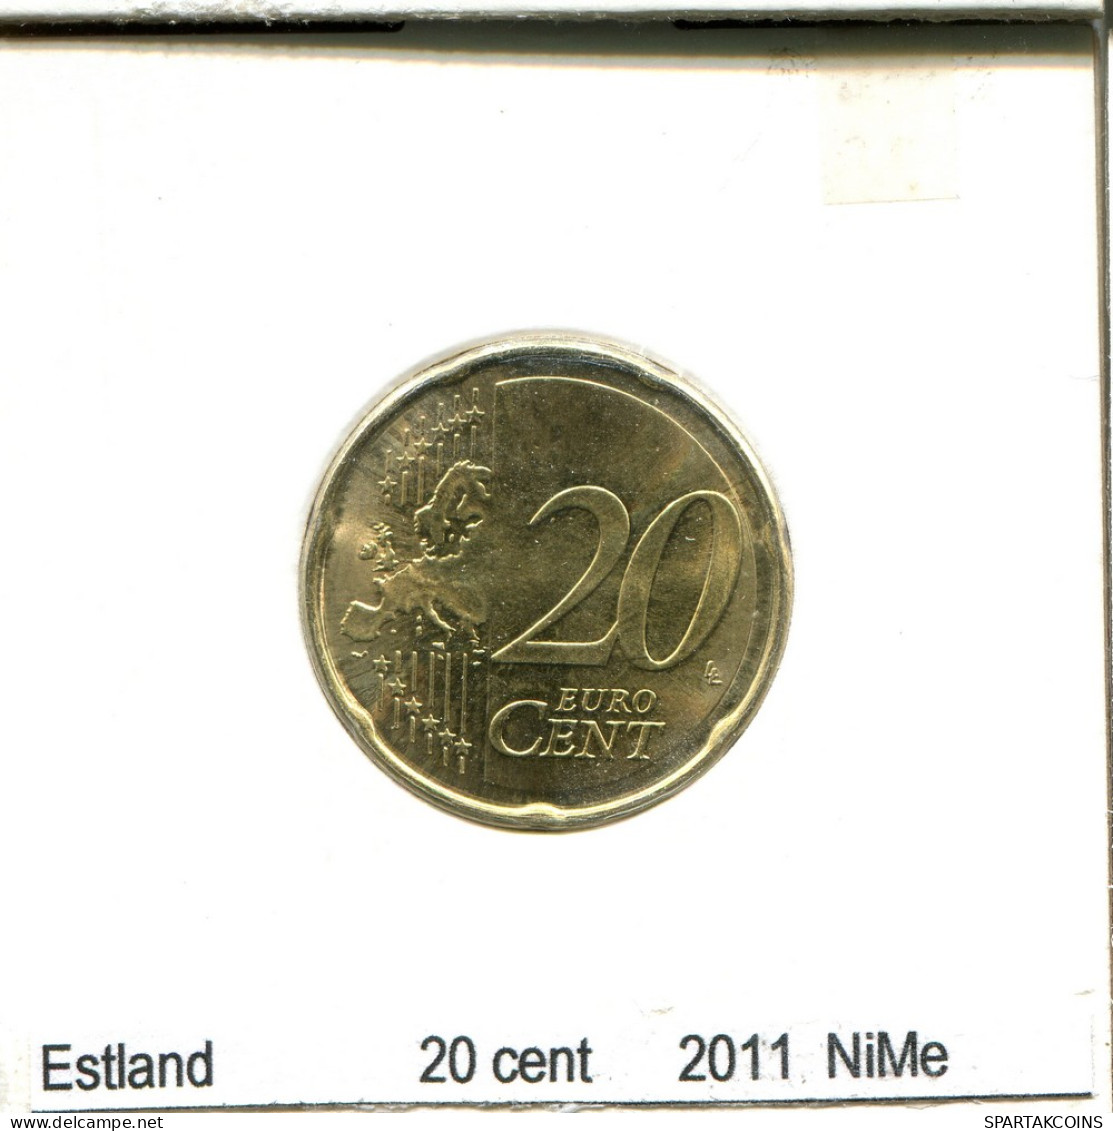 20 CENTS 2011 ESTONIA Coin #AS688.U - Estonia